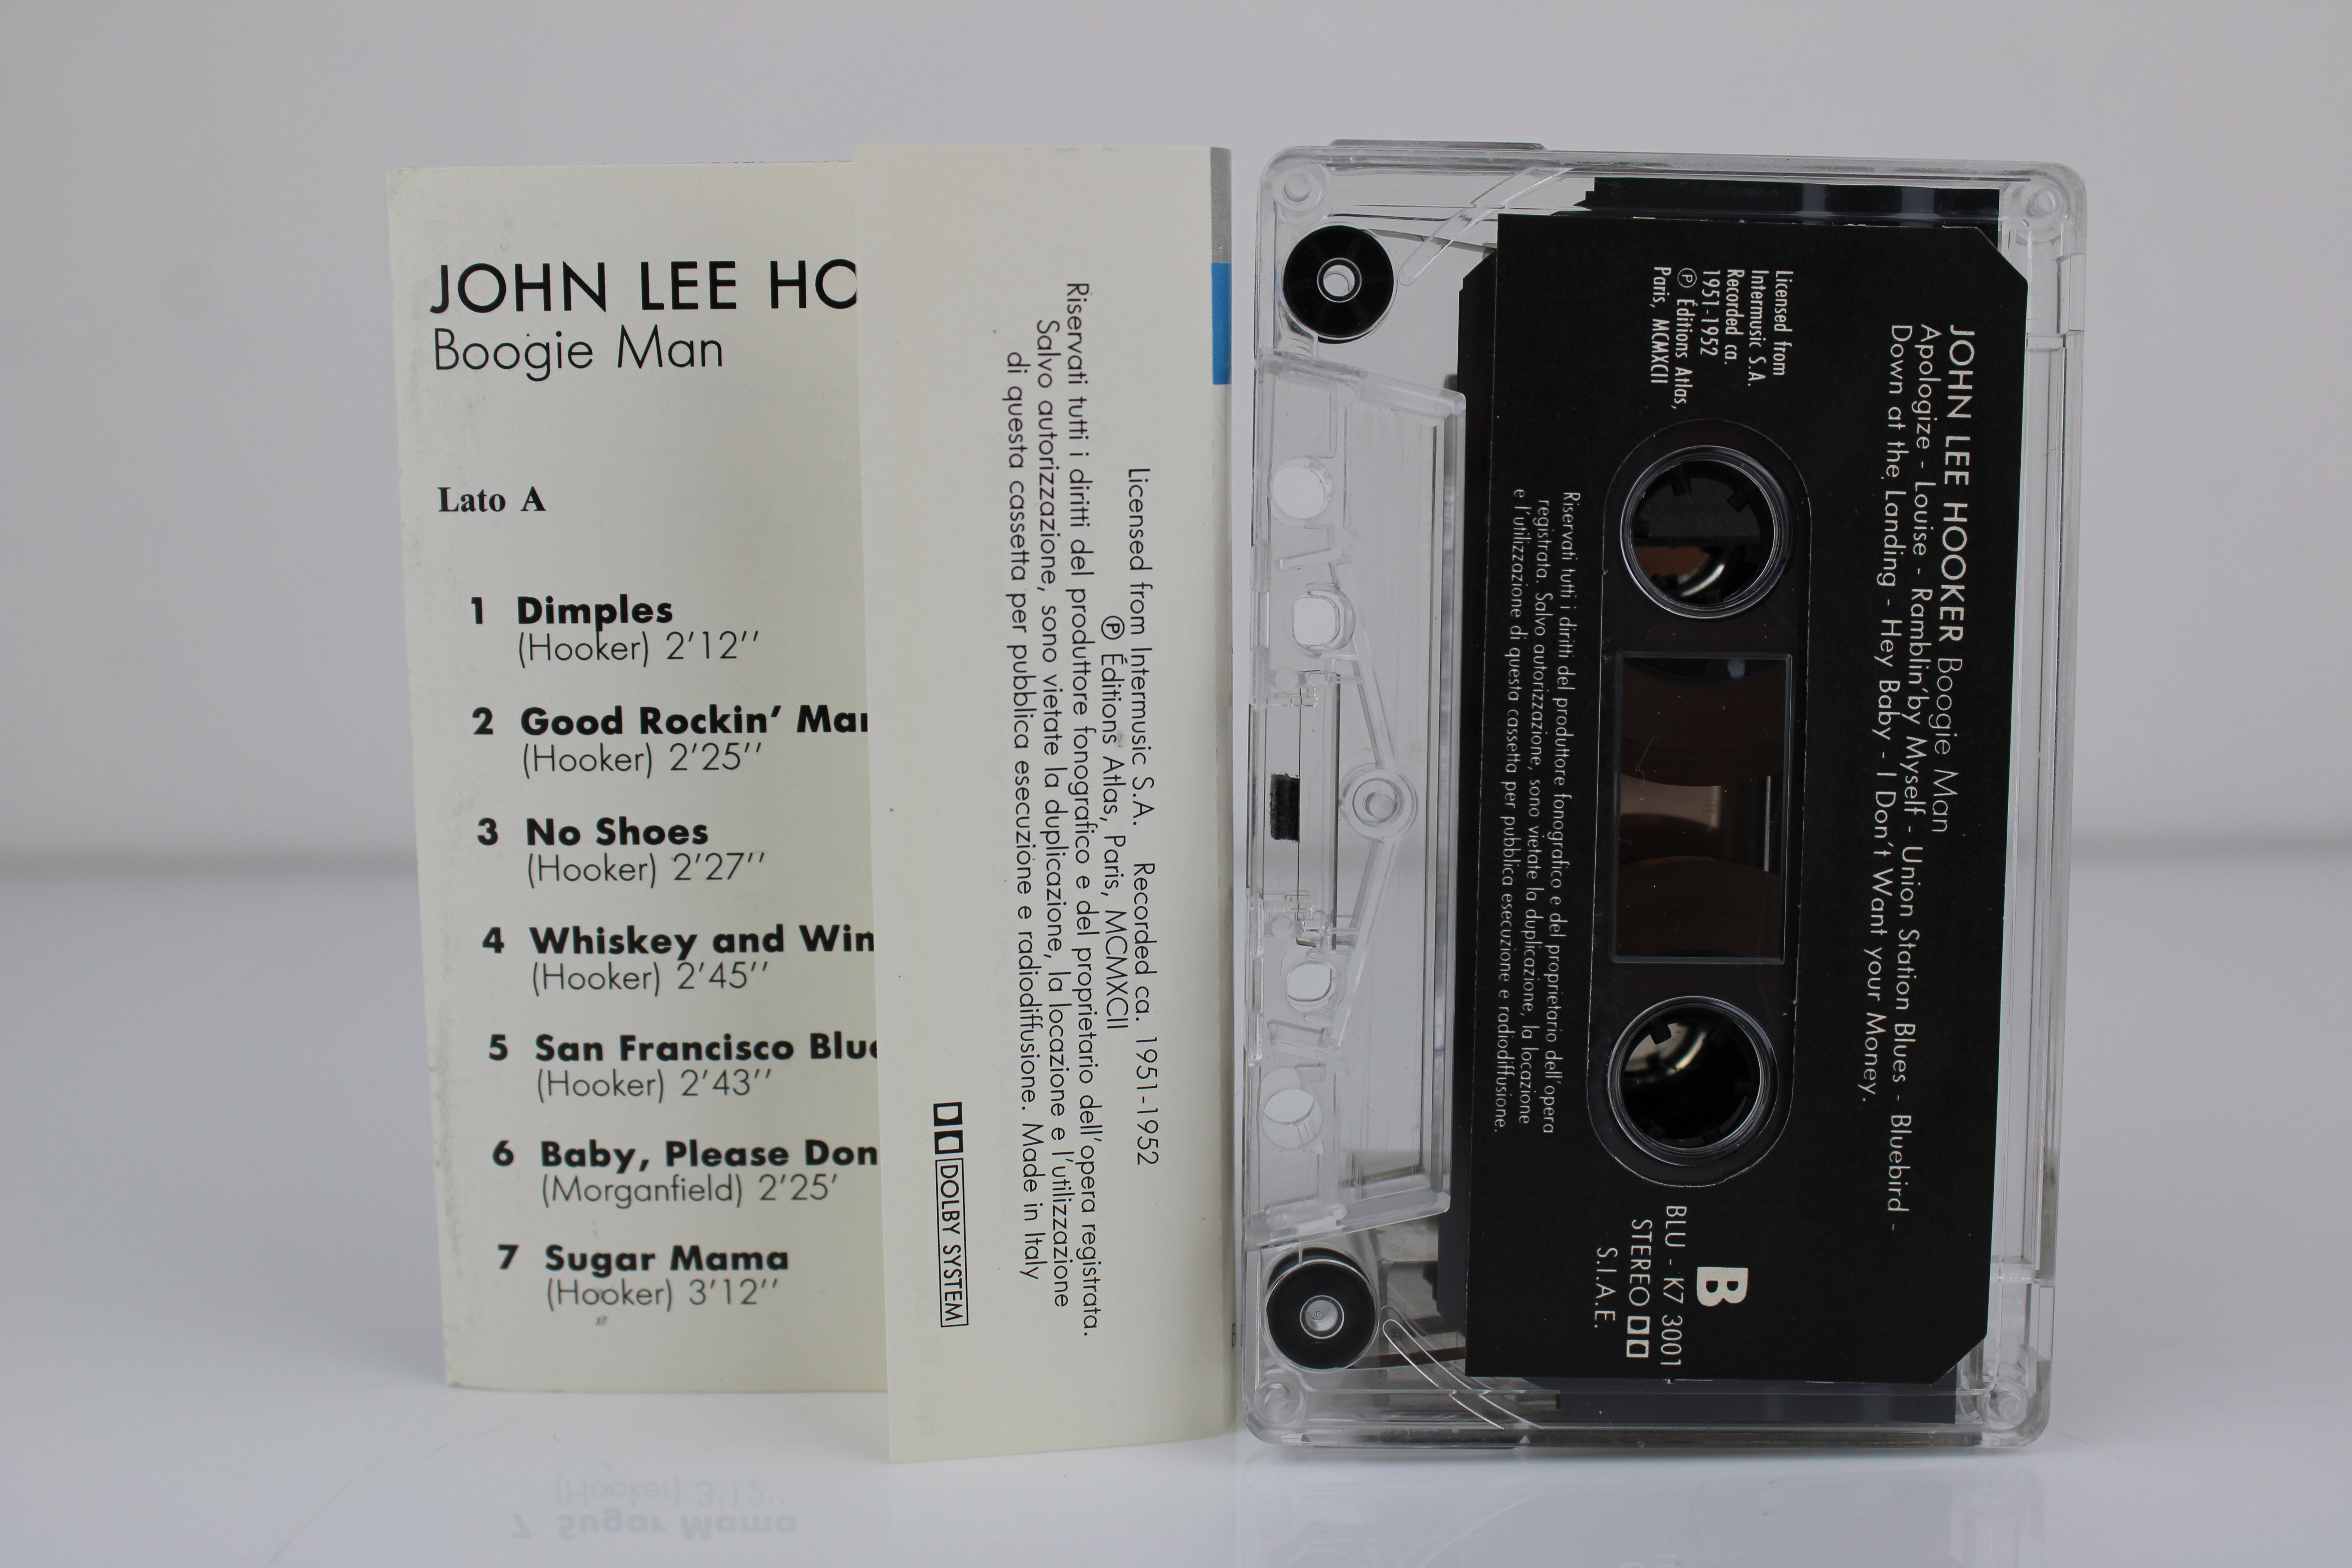 John Lee Hooker ‎Boogie Man Compilation BLU-K7 3001 Musicassetta MC Cassette